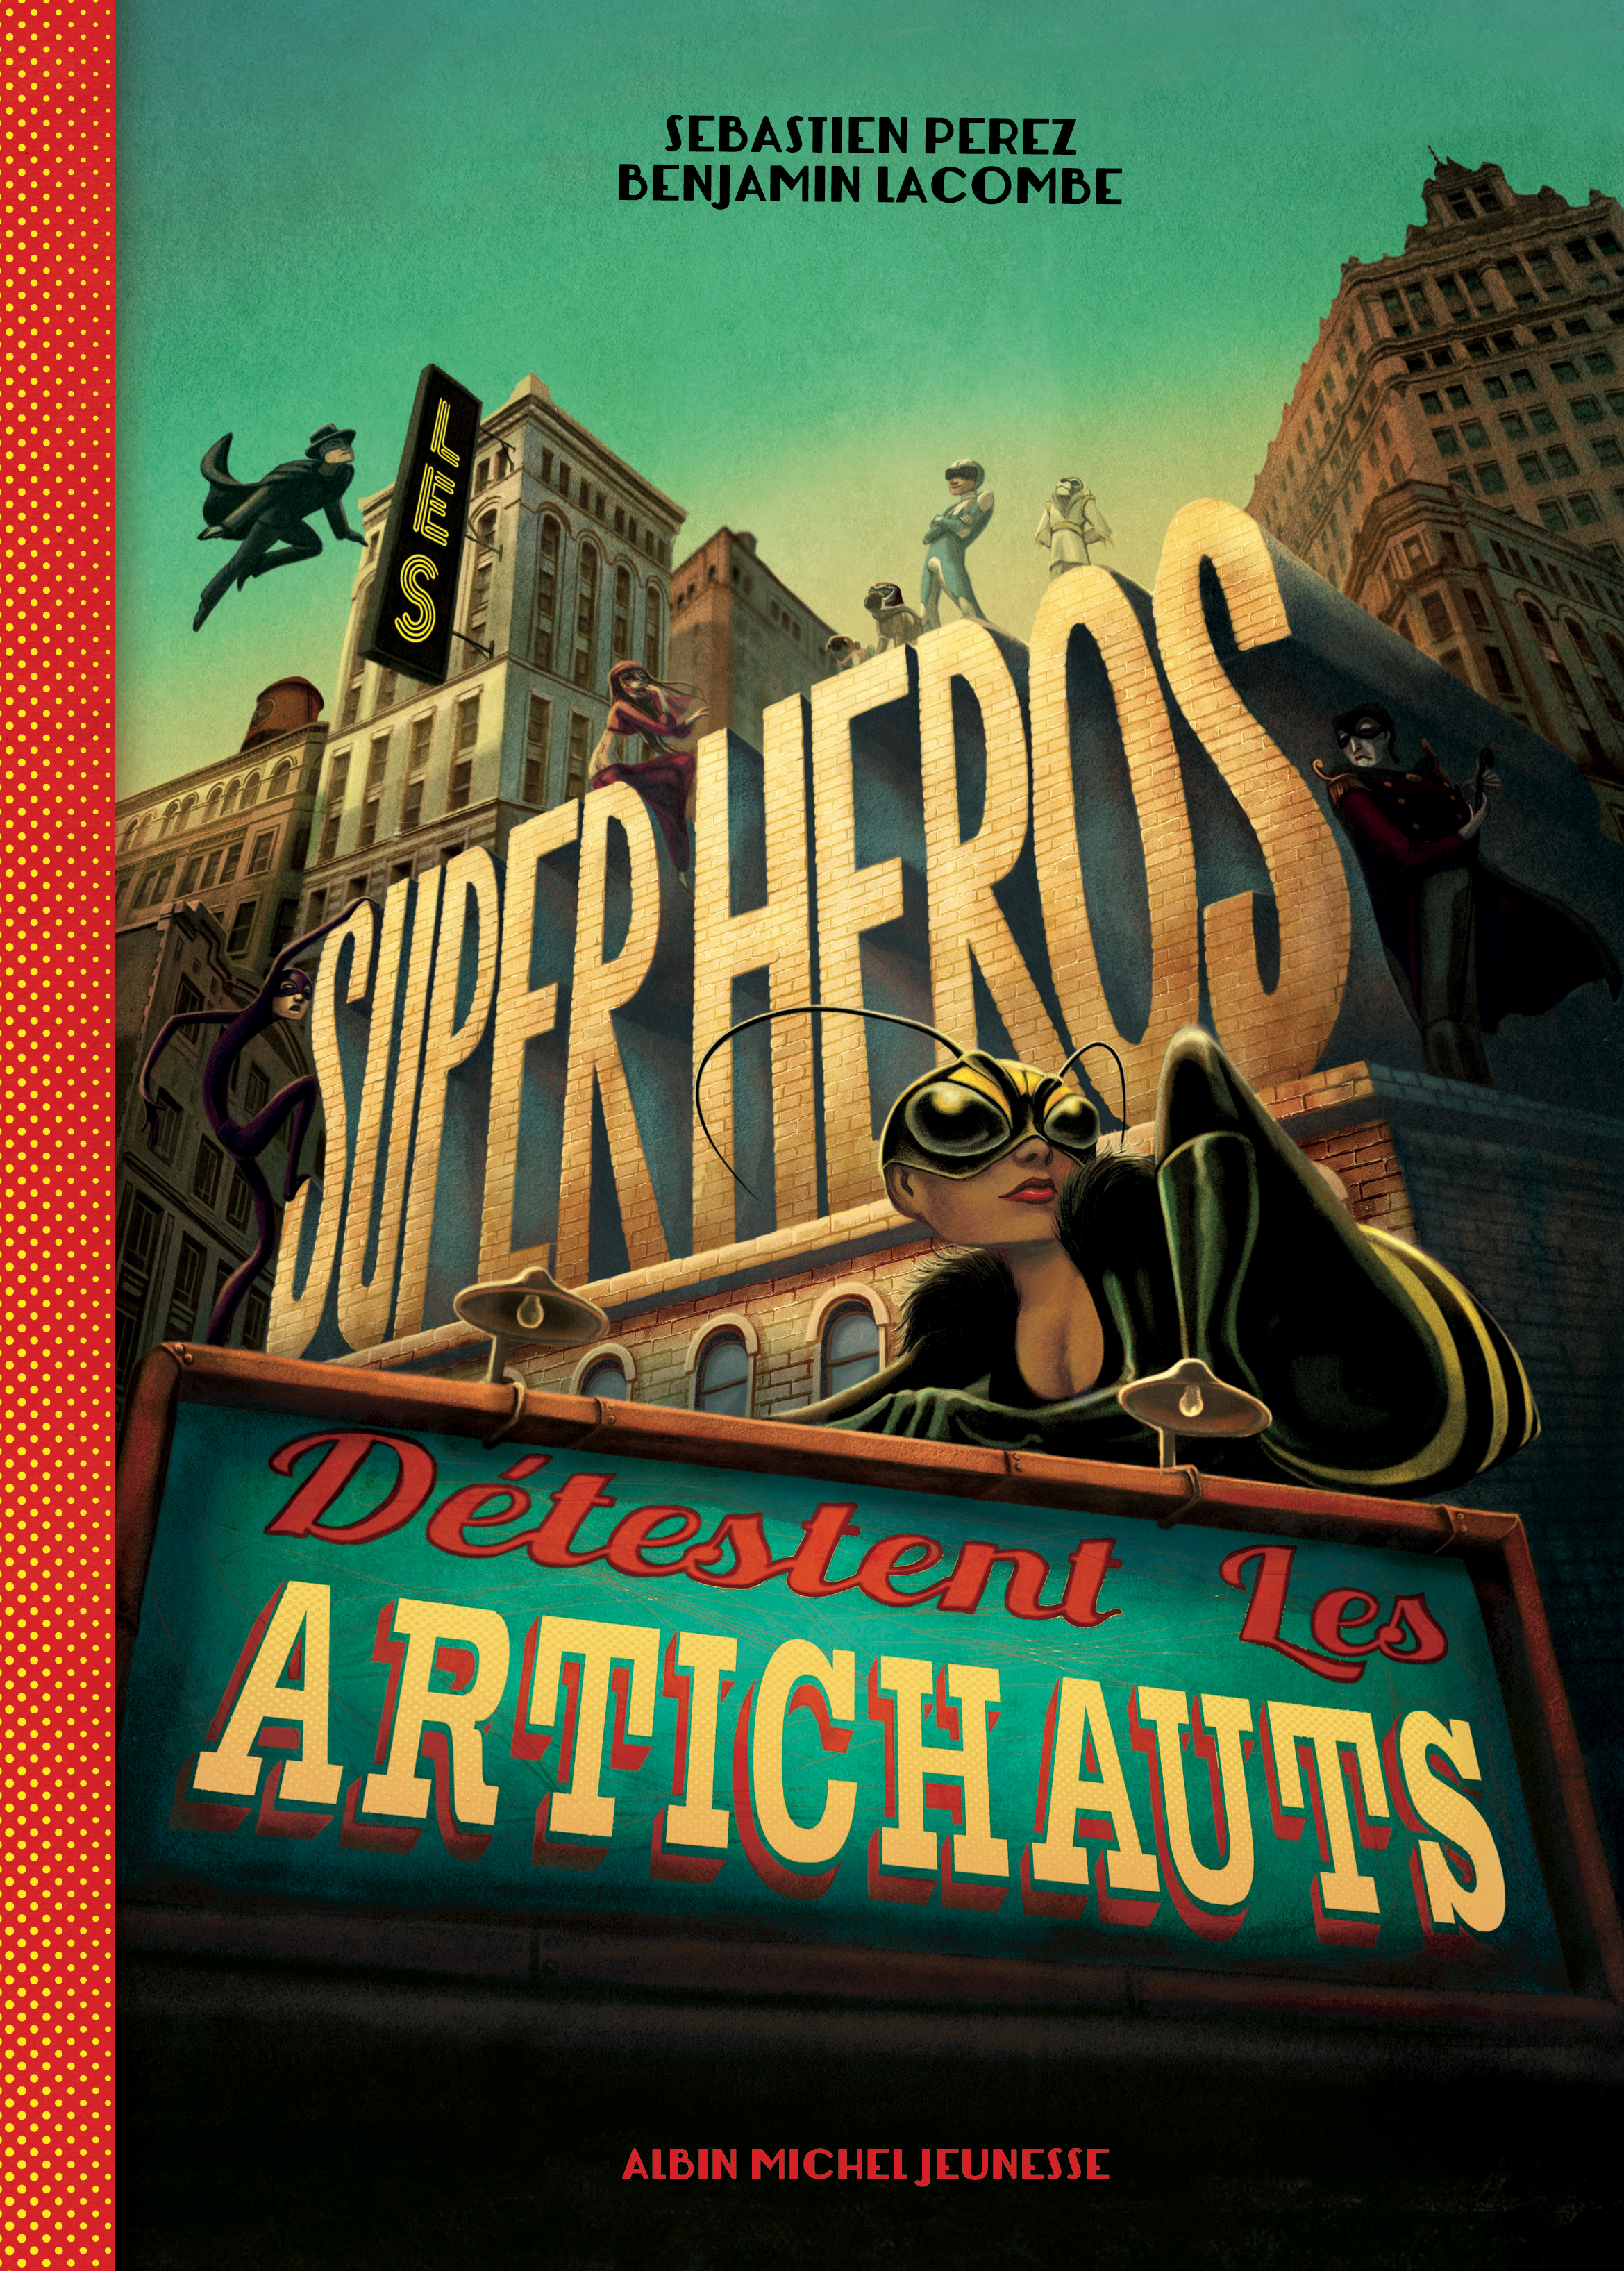 Couverture du livre Les Super-héros détestent les artichauts